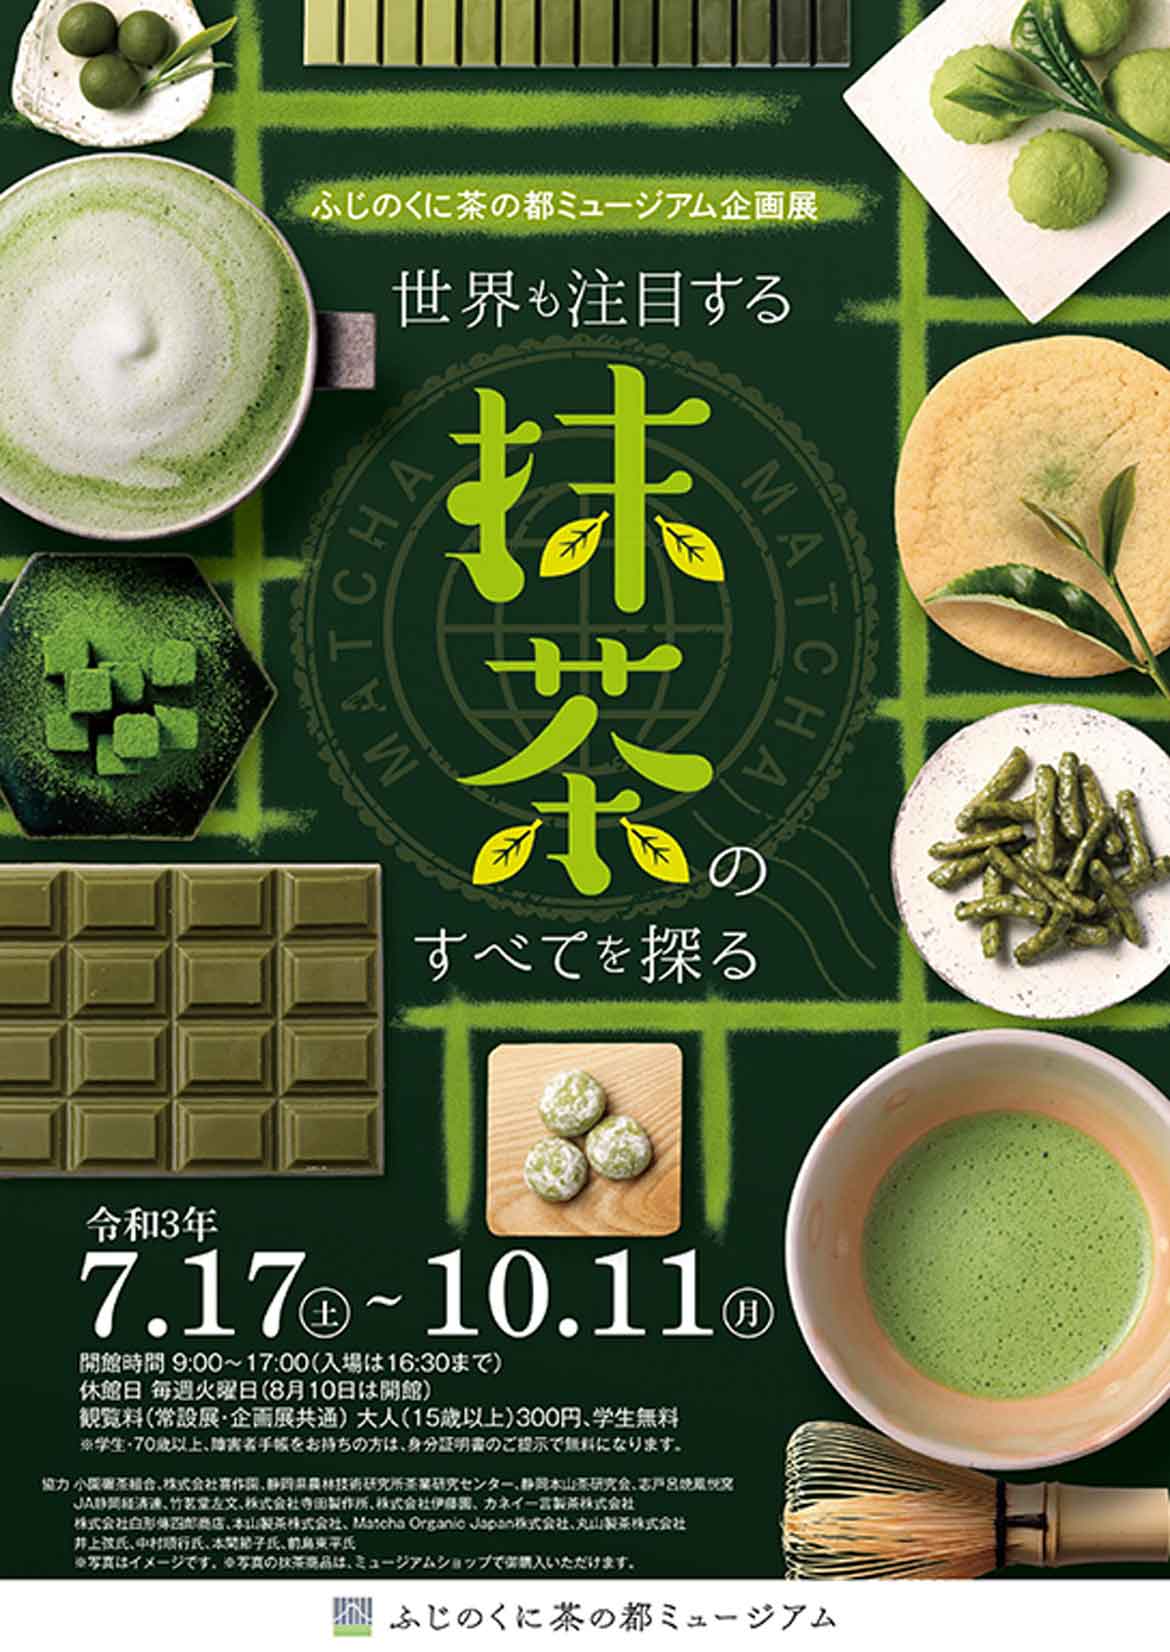 ふじのくに茶の都ミュージアム企画展「世界も注目する 抹茶のすべてを探る」を開催